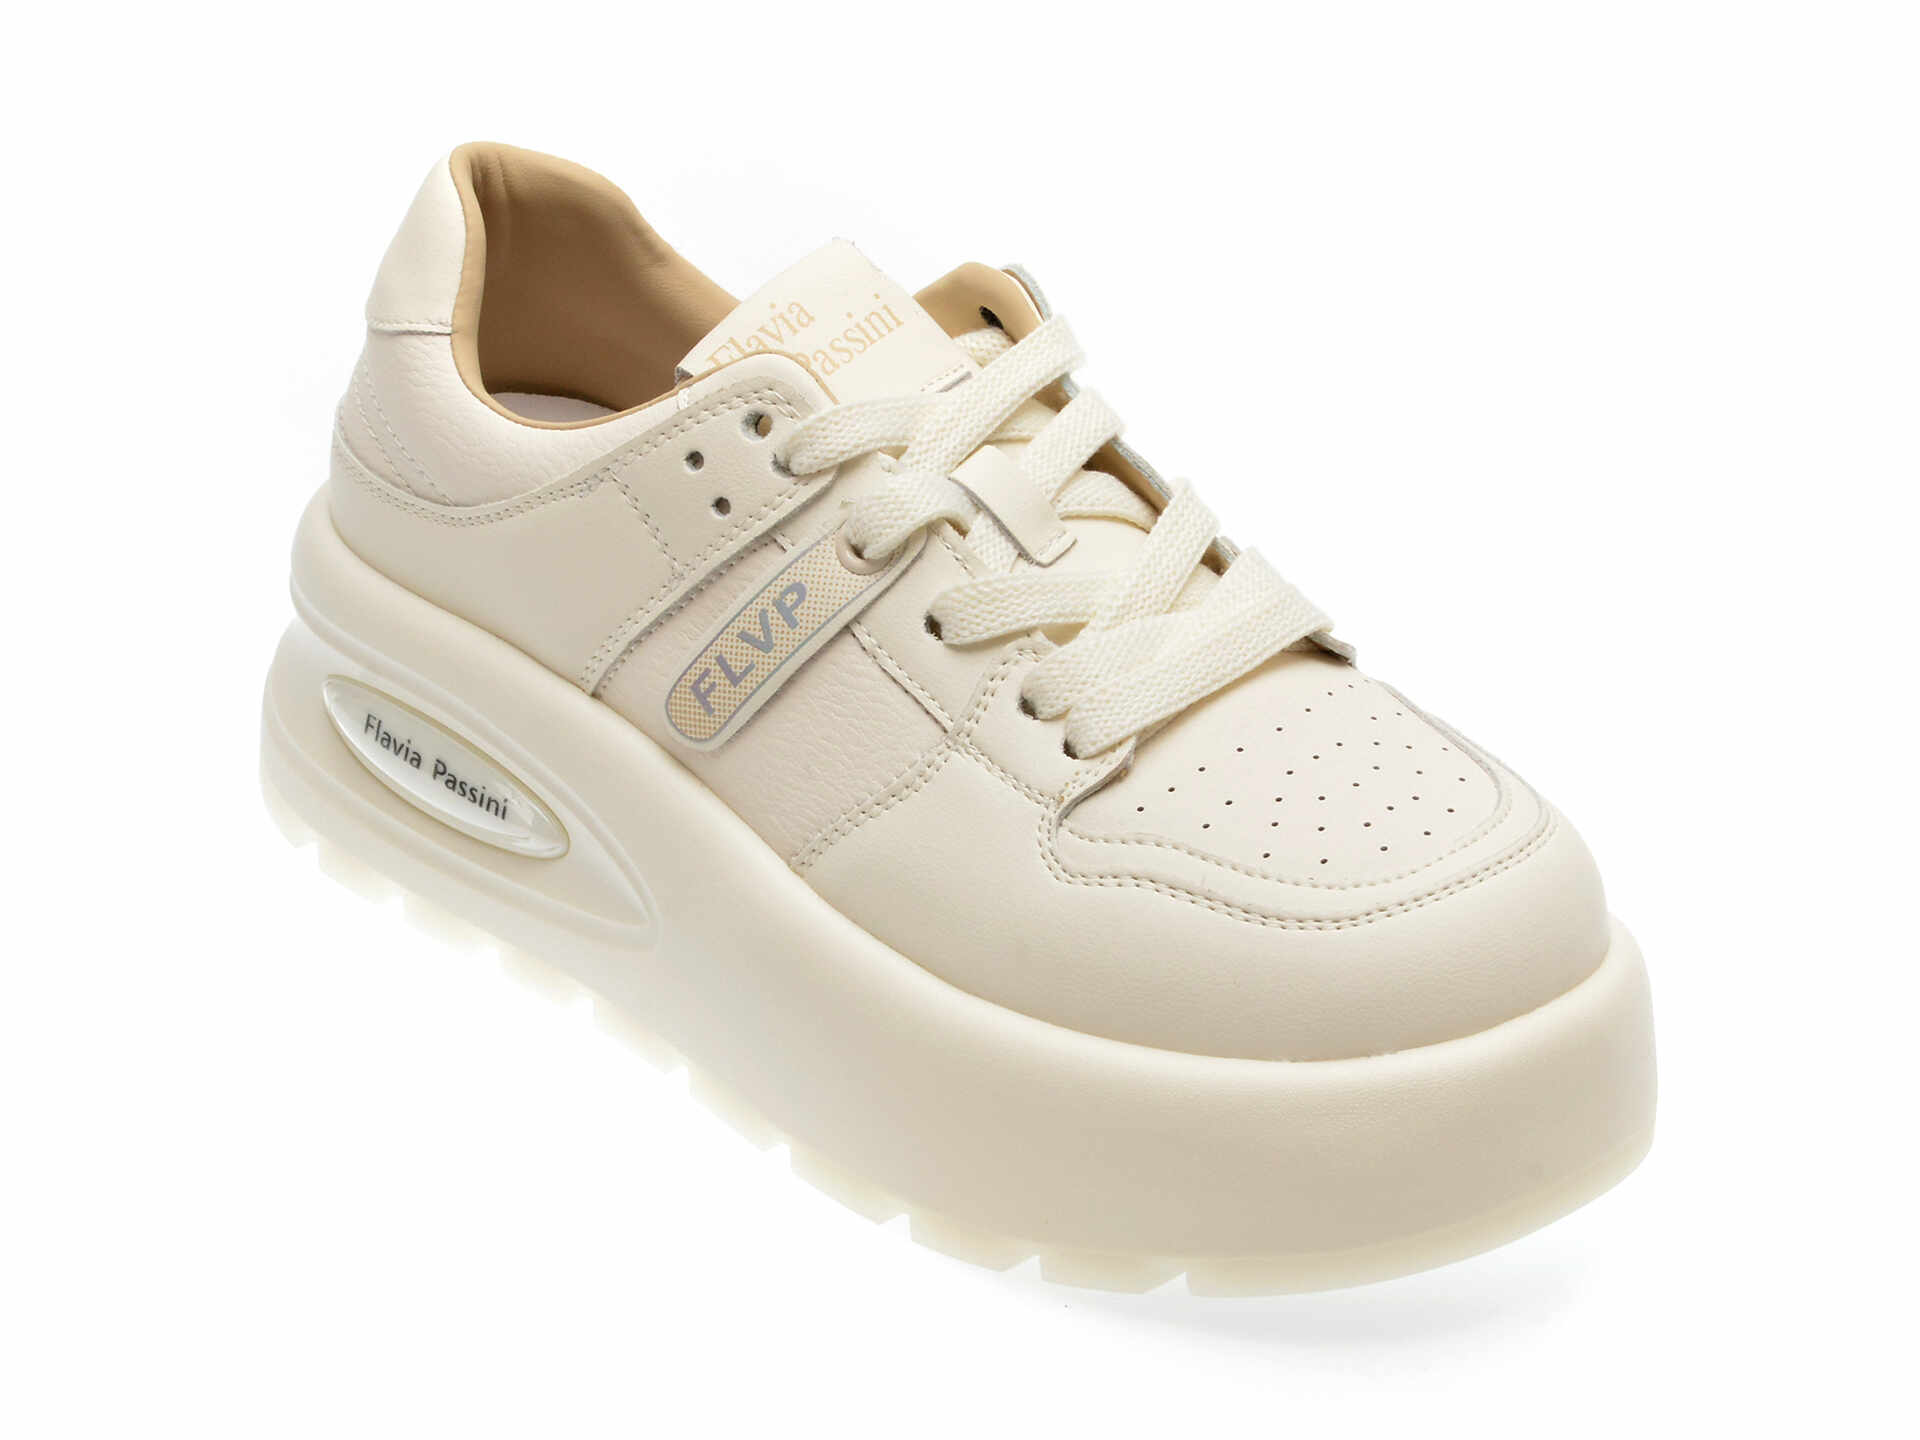 Pantofi casual FLAVIA PASSINI albi, 31C0039, din piele naturala